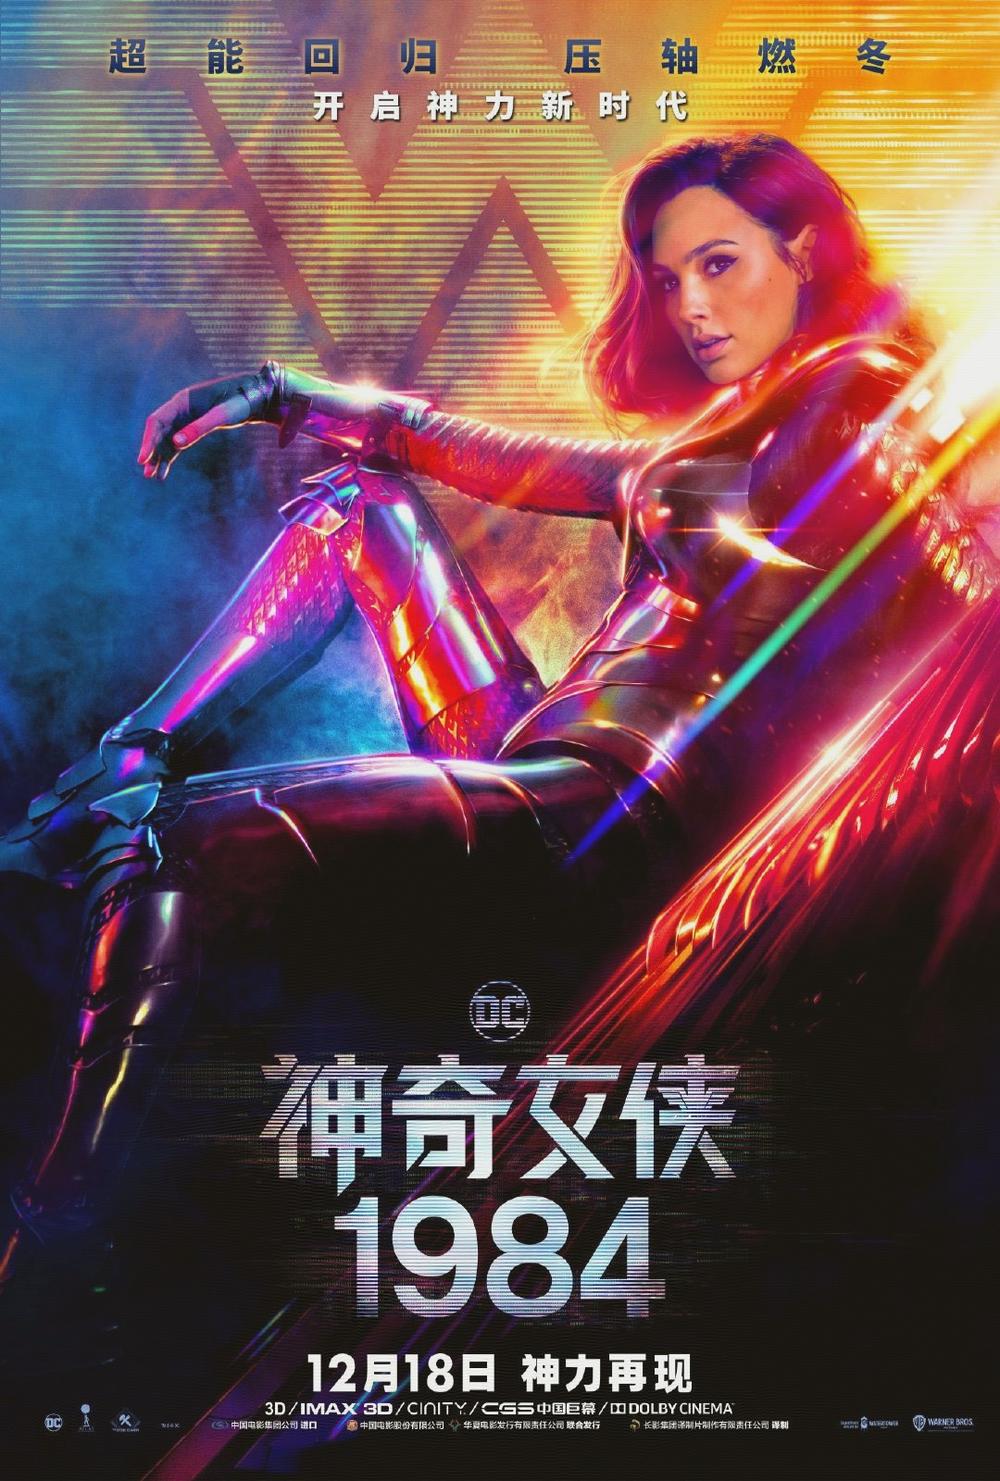 《神奇女侠1984》中国独家预告发布 女神乘闪电而来